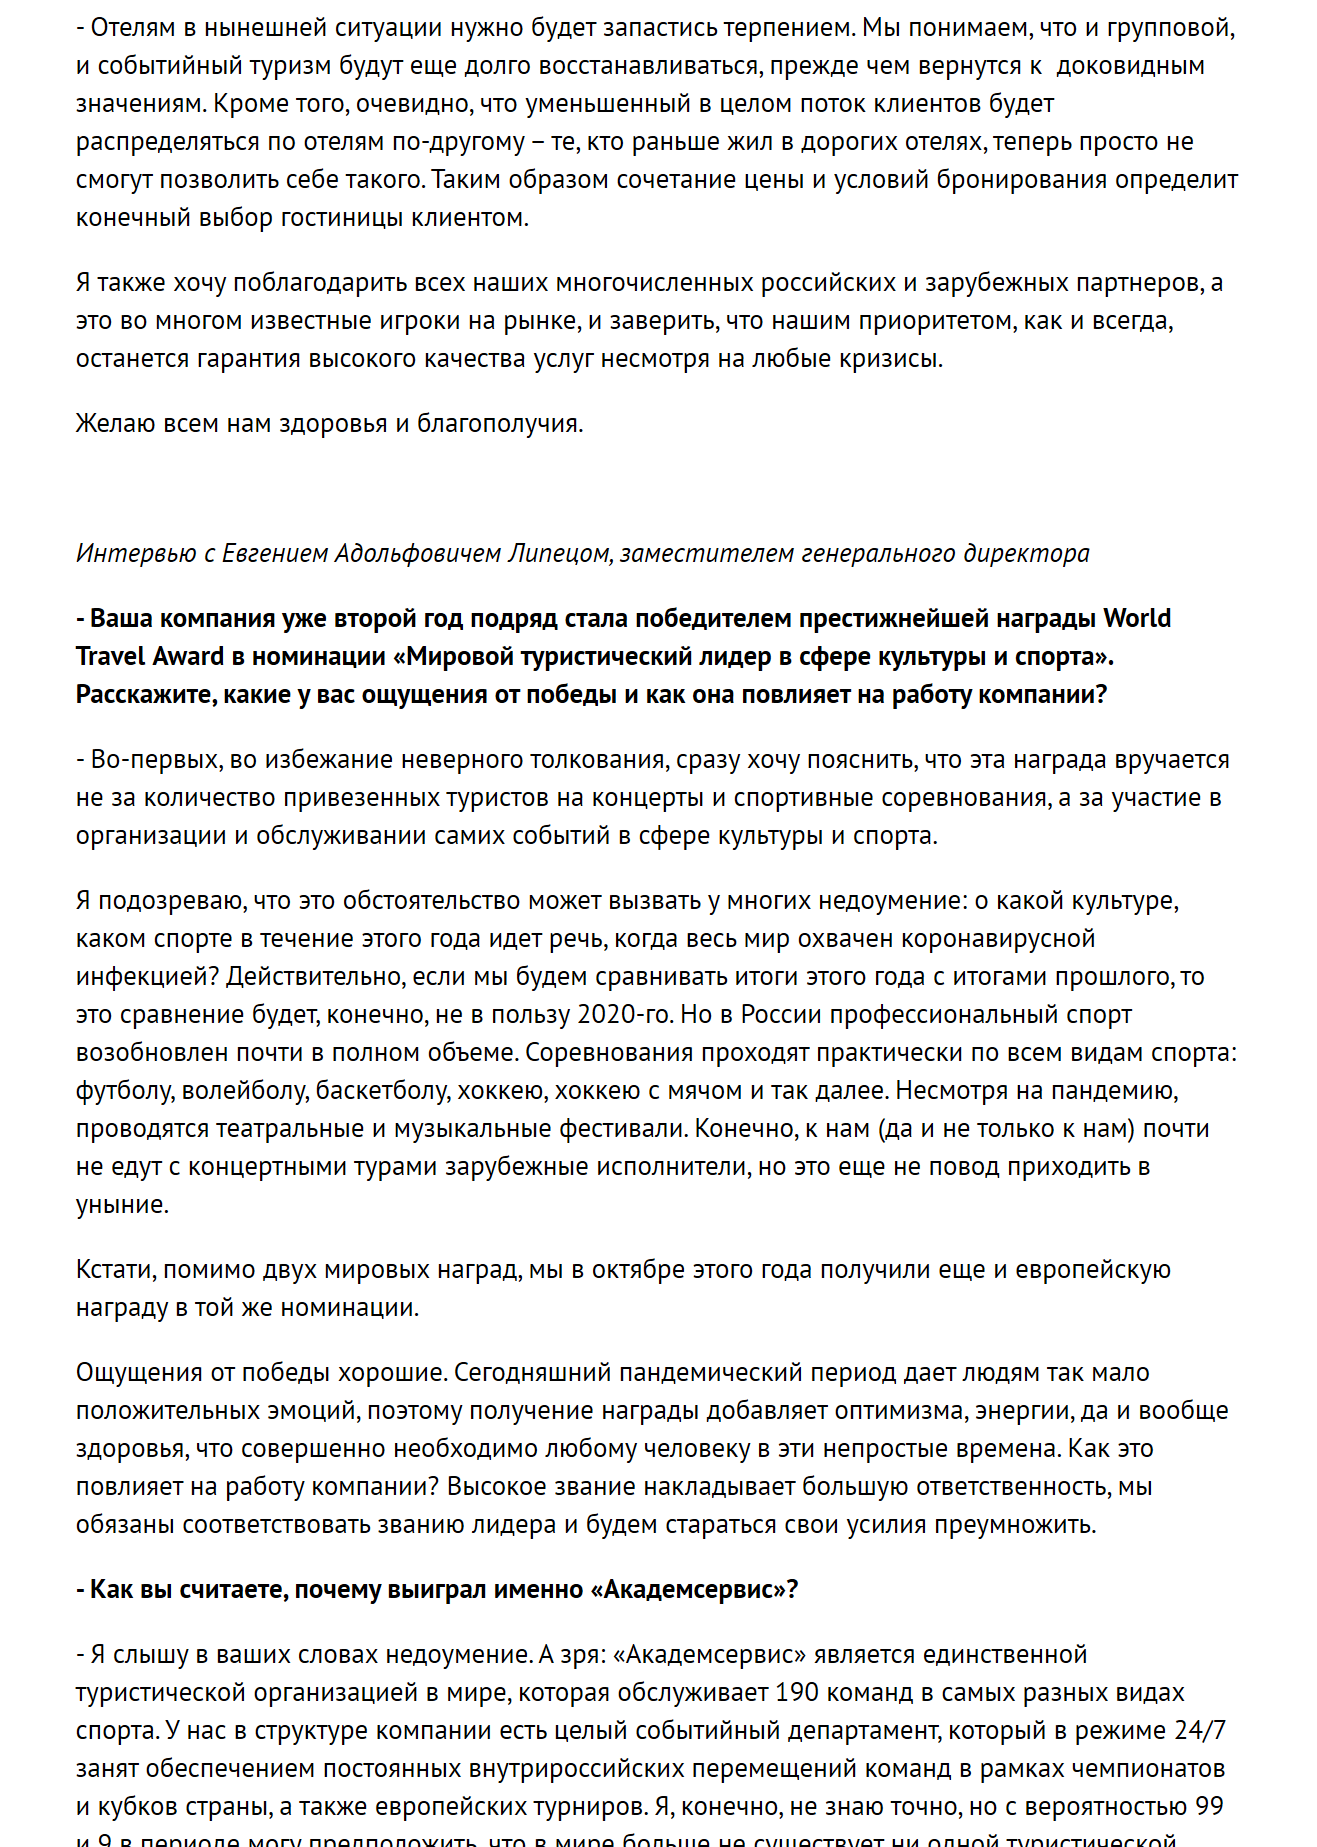 «Спортивные новости в Москве», sport.russia24.pro, 01.12.2020